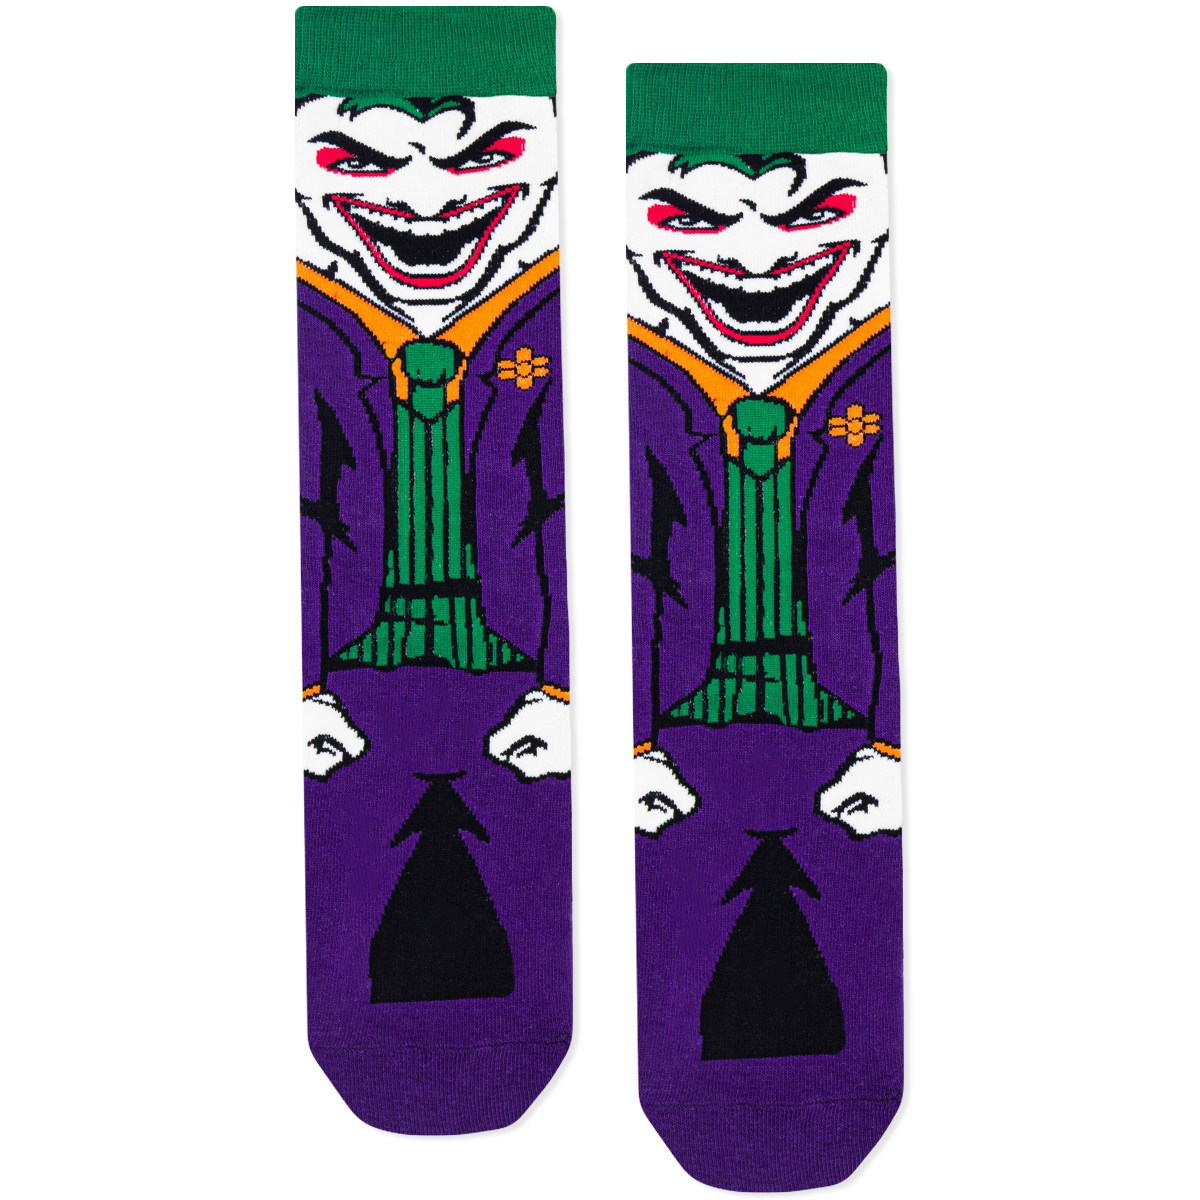 Joker - Horror Characters Socks